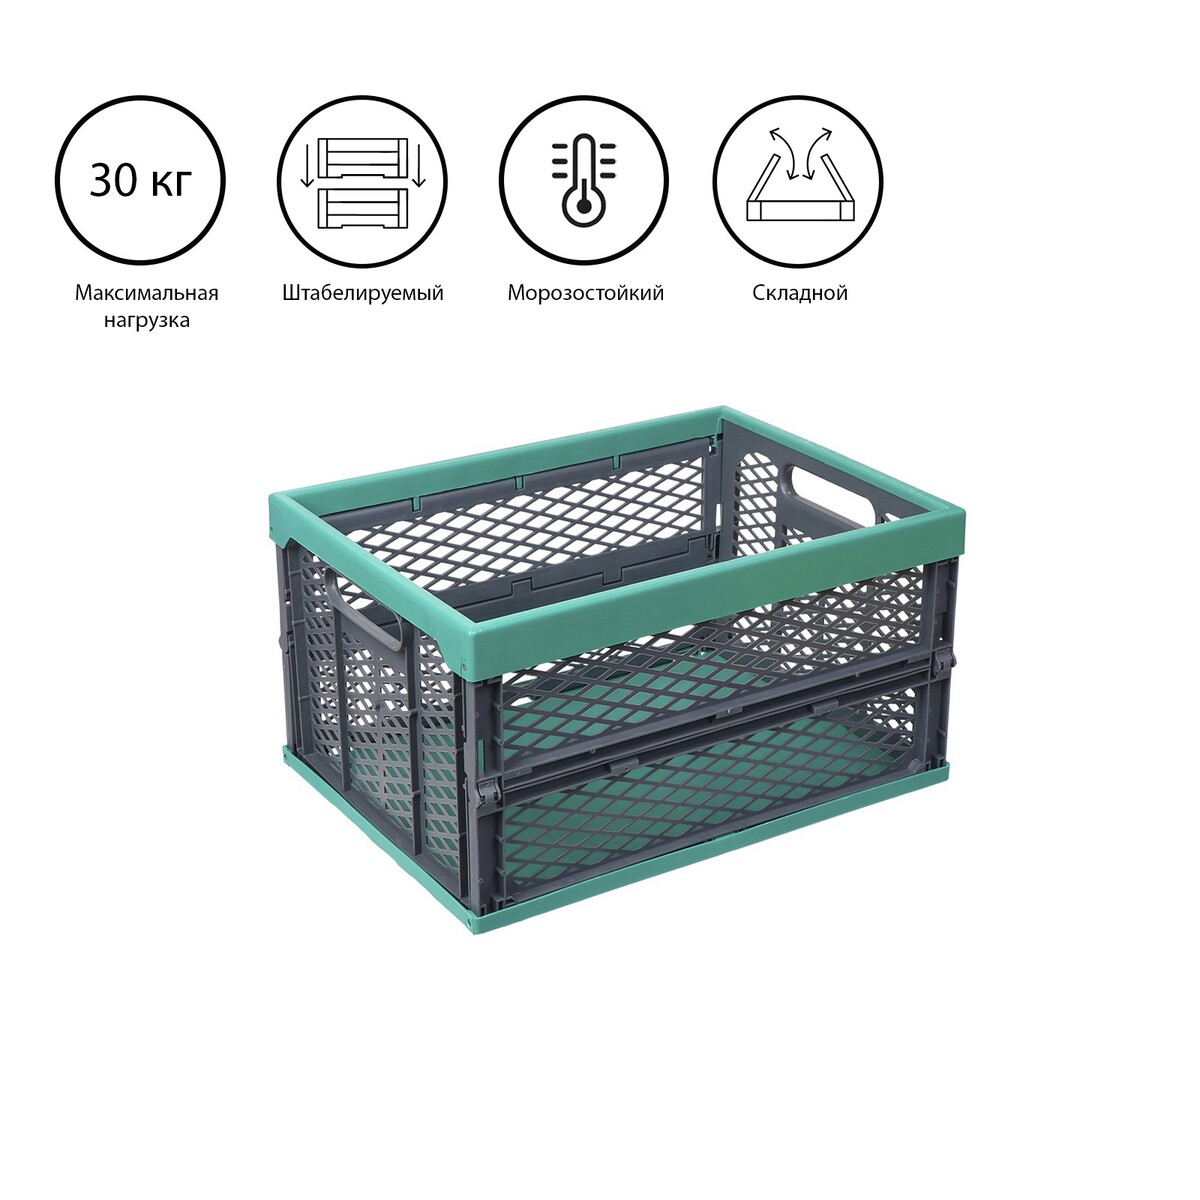 Ящик складной, пластиковый, 47,5 × 34,5 × 23 см, на 30 кг, зелено-серый шкаф тканевый каркасный складной ladо́m 125×45×168 см серый